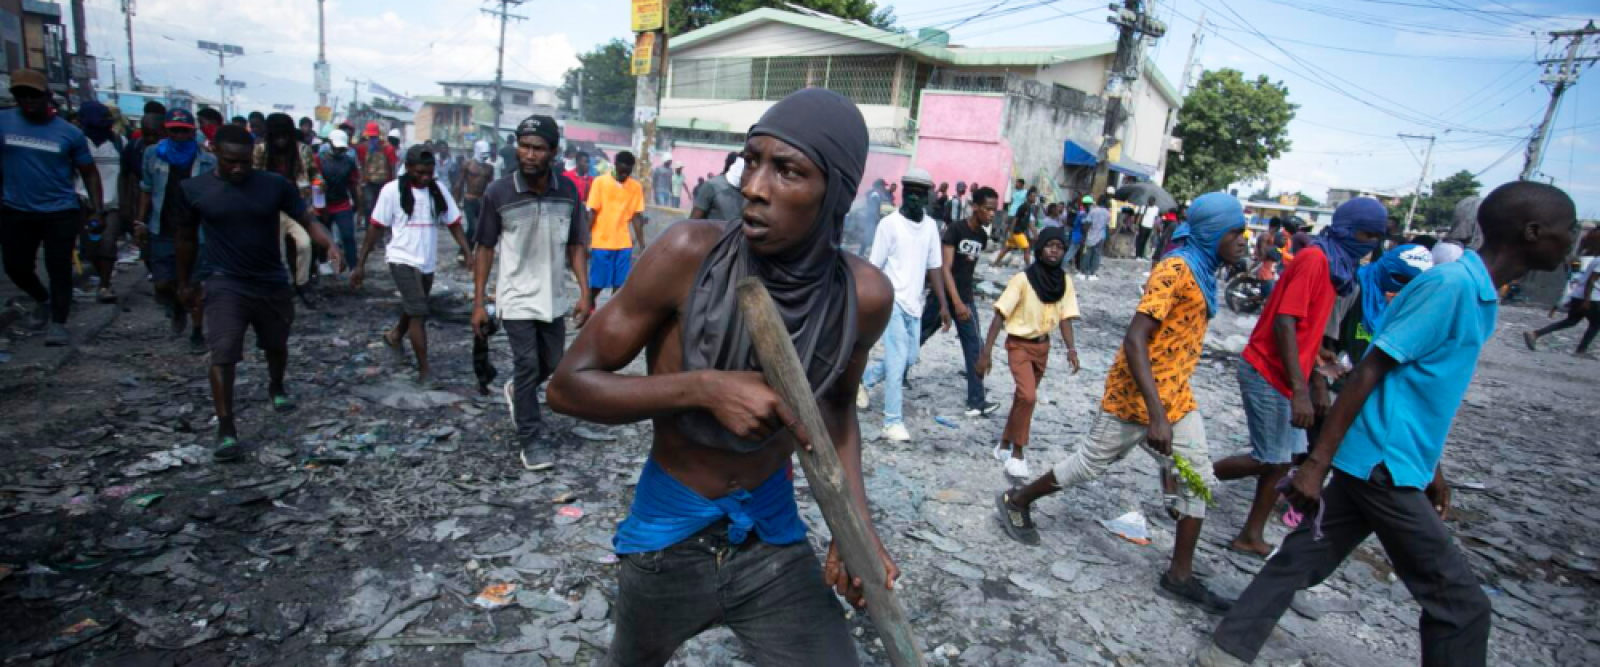 Crisis en Haití: Decretan estado de emergencia tras fuga de más de 3.500 presos